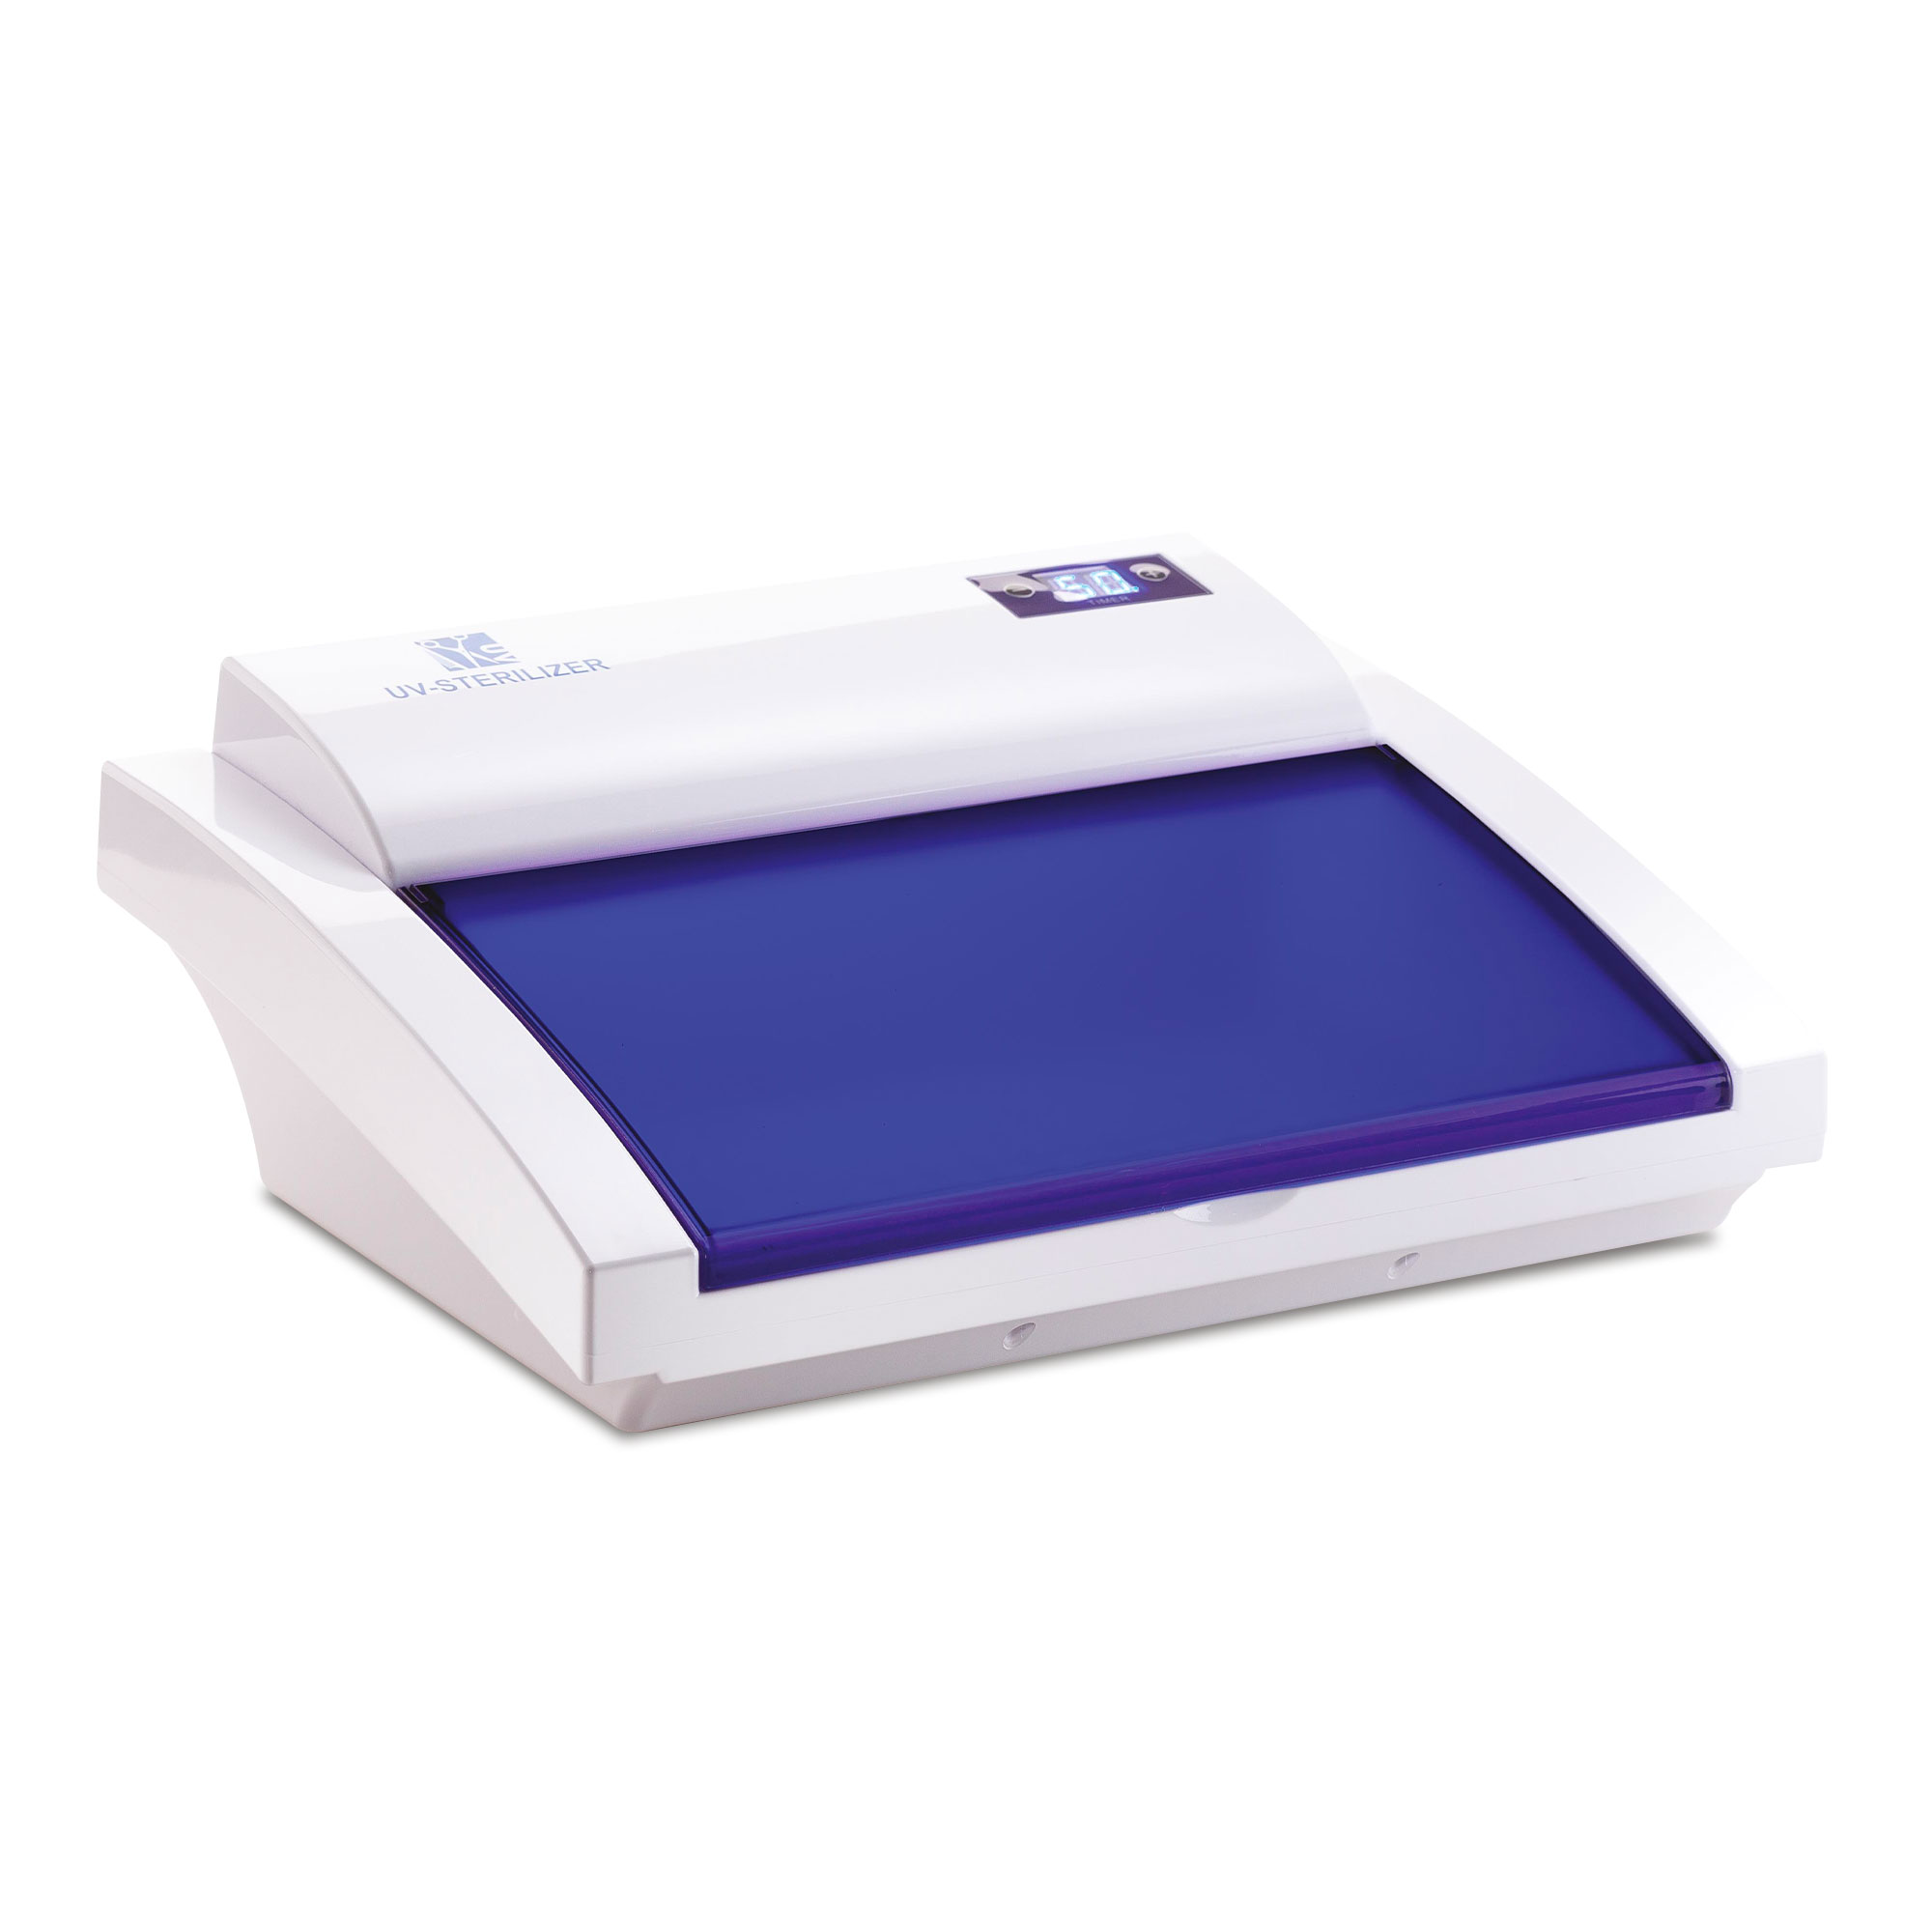 Steril Pro UV-Entkeimungslampe zur Aufbewahrung sterilisierter Instrumente